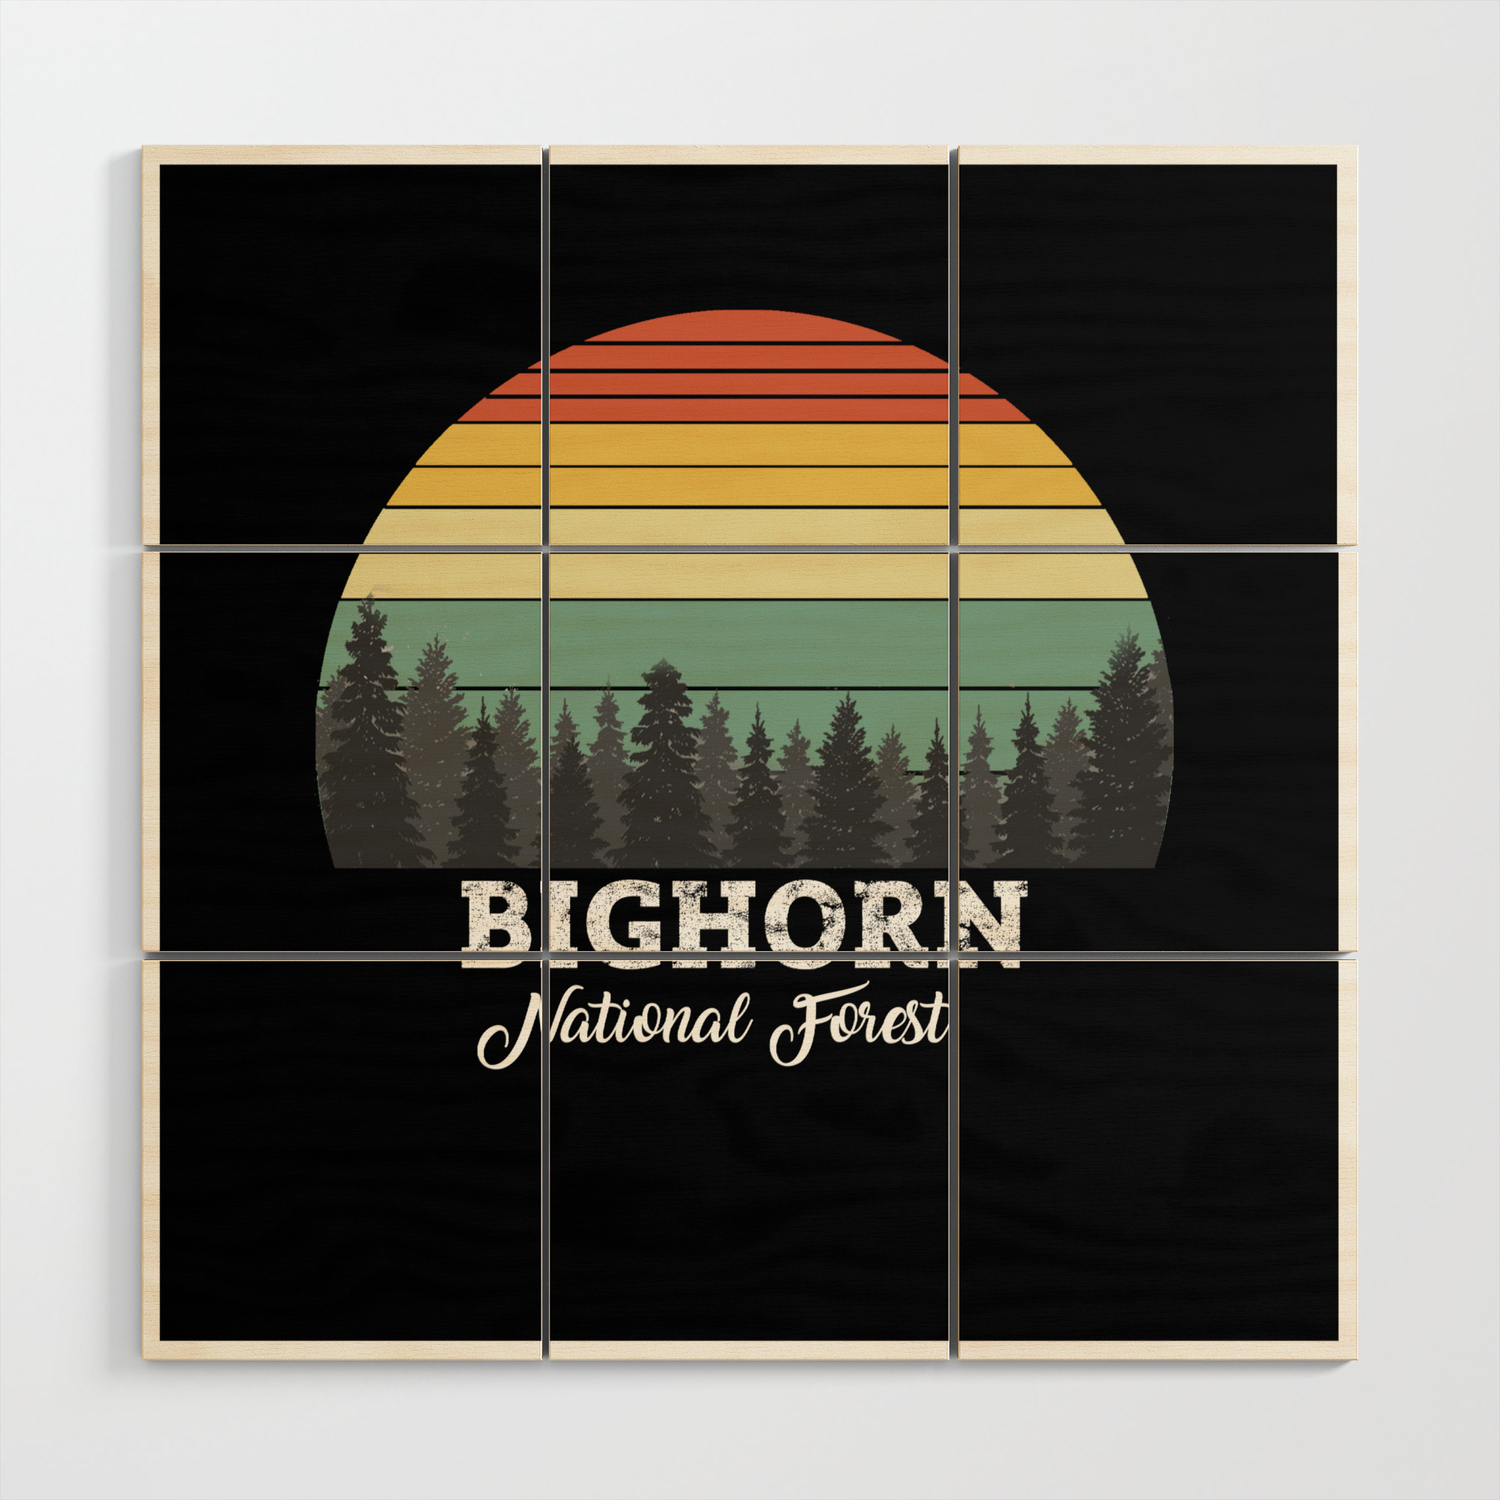 Bighorn National Forest Vinyl Decal Wall Laptop Bumper Sticker 5